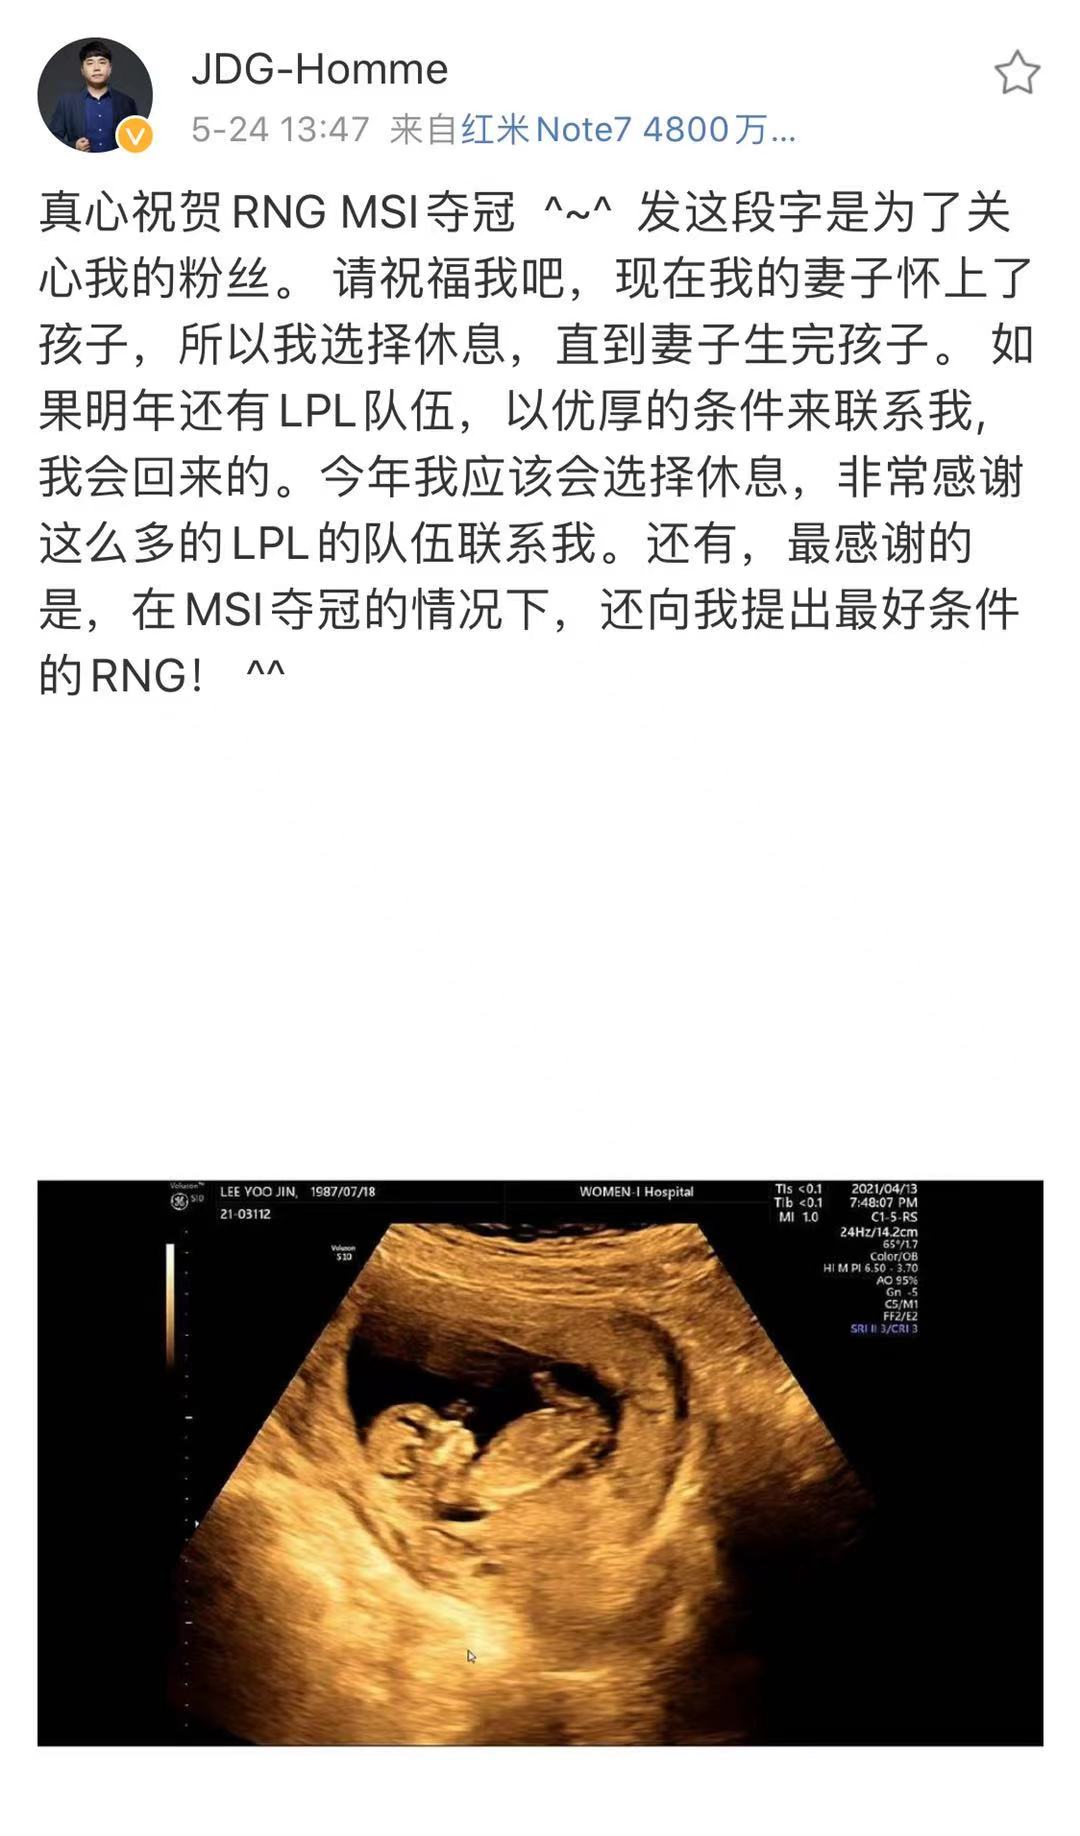 教练红米发微博祝贺RNG夺冠，因妻子怀孕选择休息